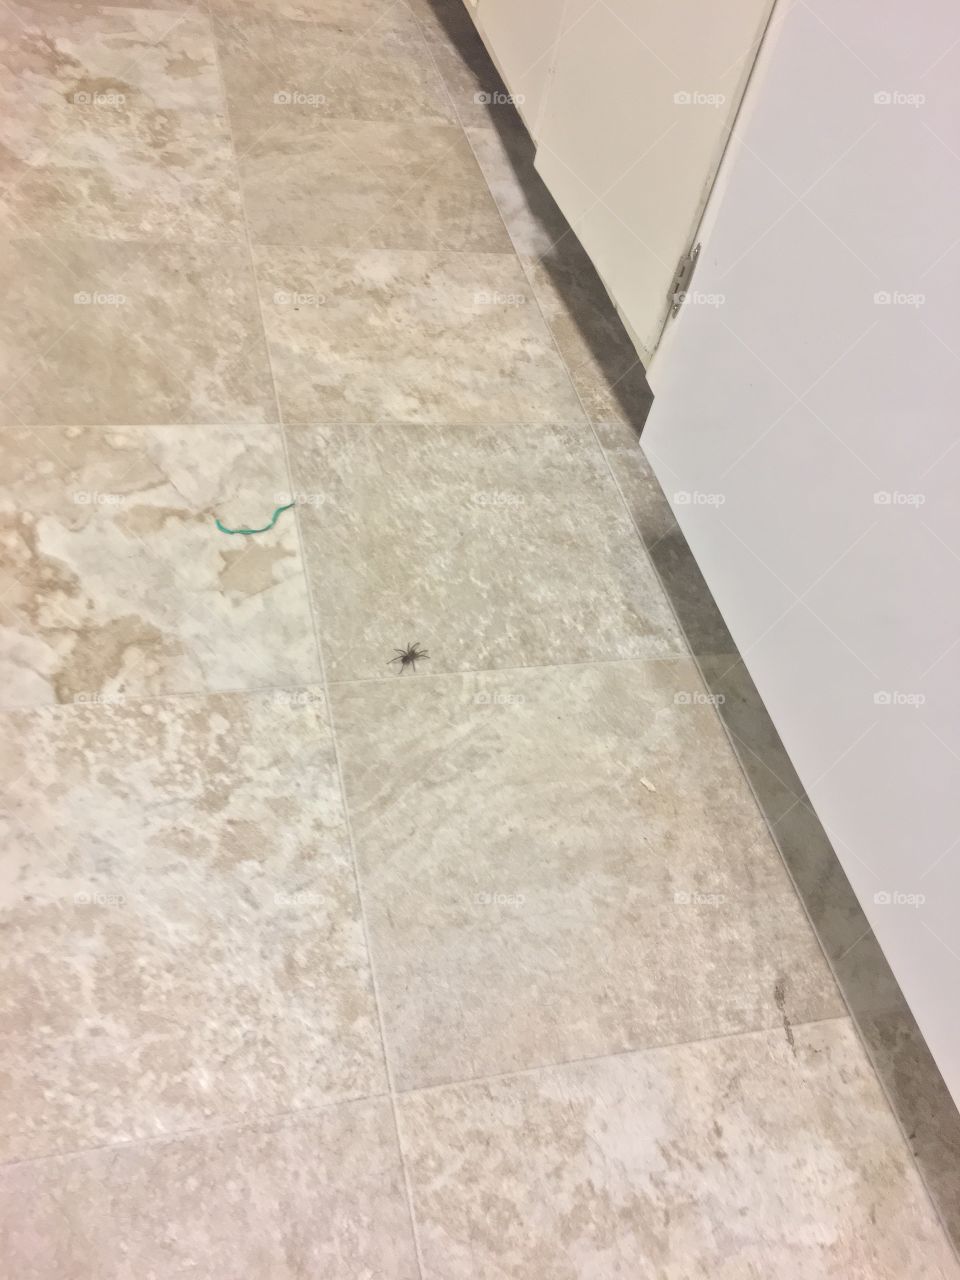 Spider on floor. 